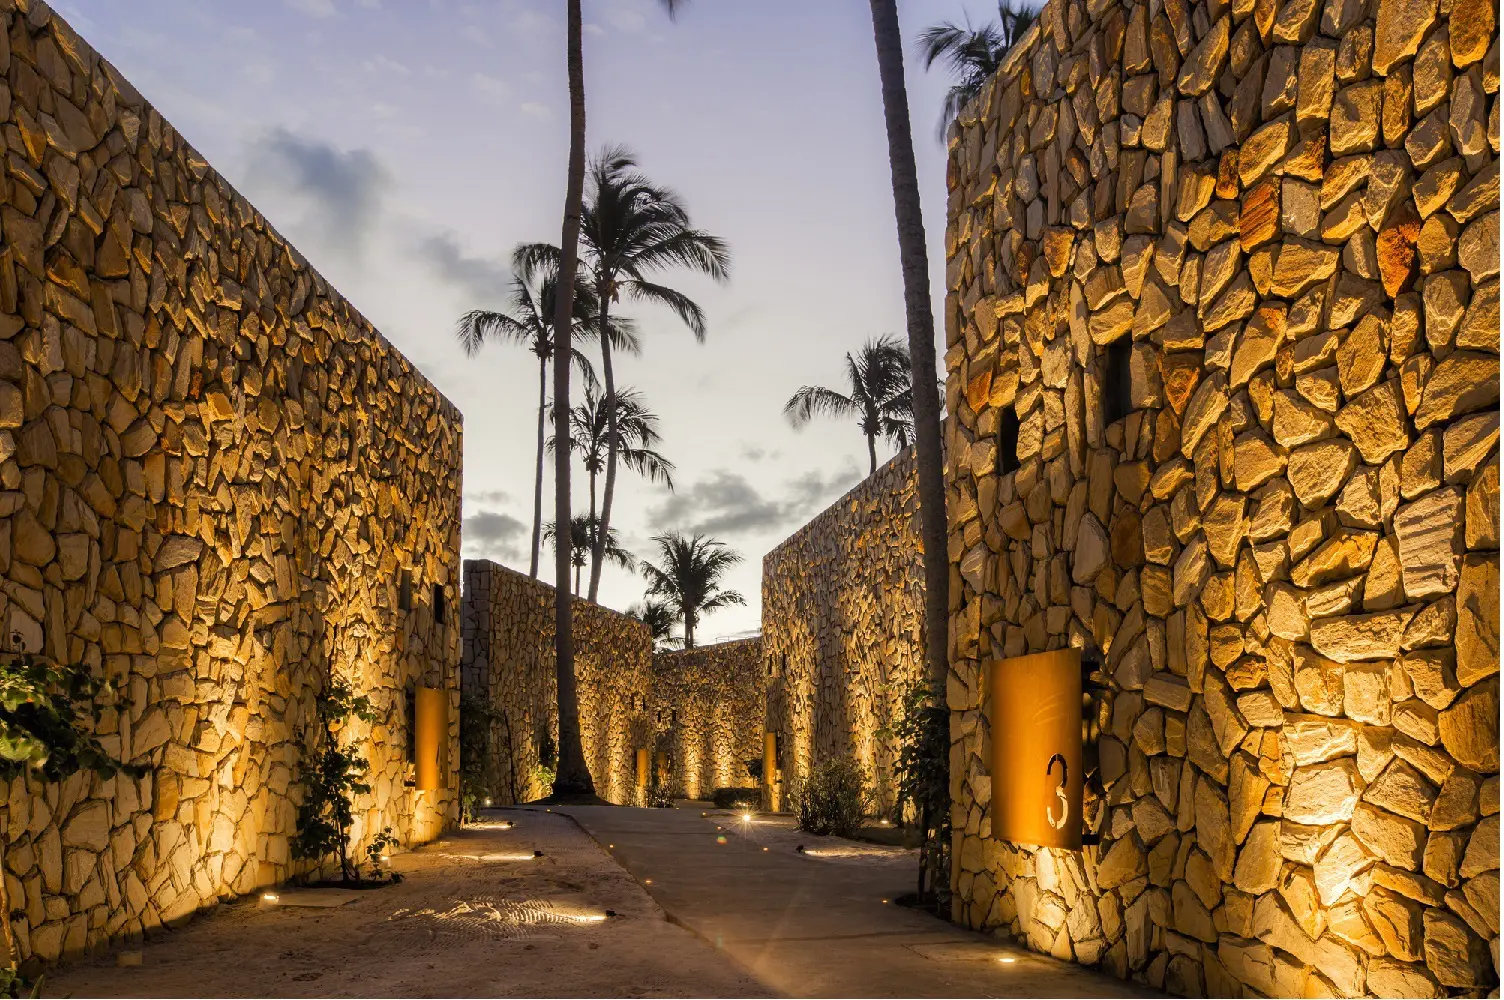 Pedras do Patacho, um hotel na rota ecológica alagoana.